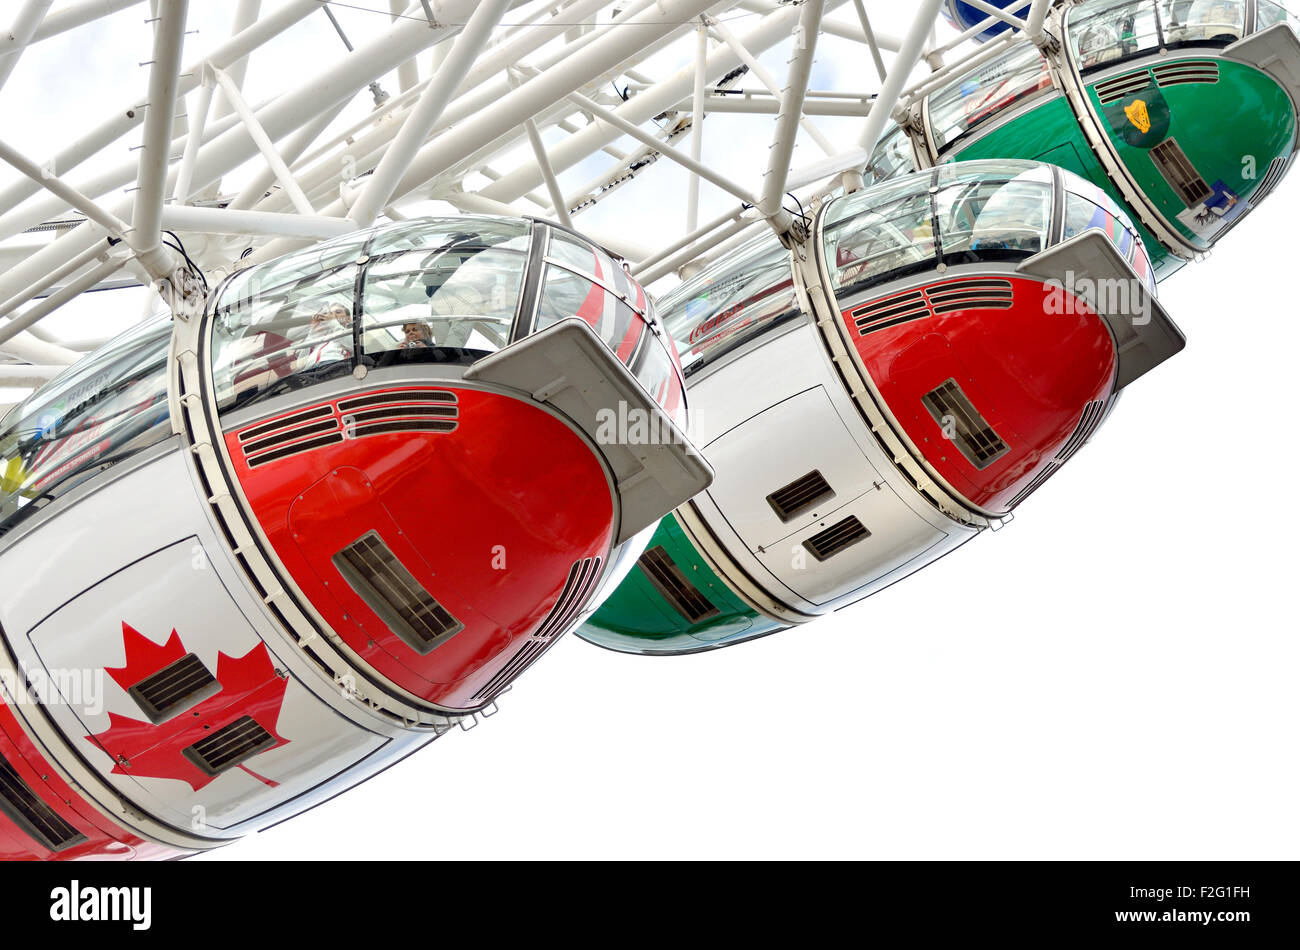 Londres, septembre 2015. Le London Eye / roue du millénaire avec pods peint avec les couleurs des 20 nations participant à la Coupe du Monde de Rugby Banque D'Images